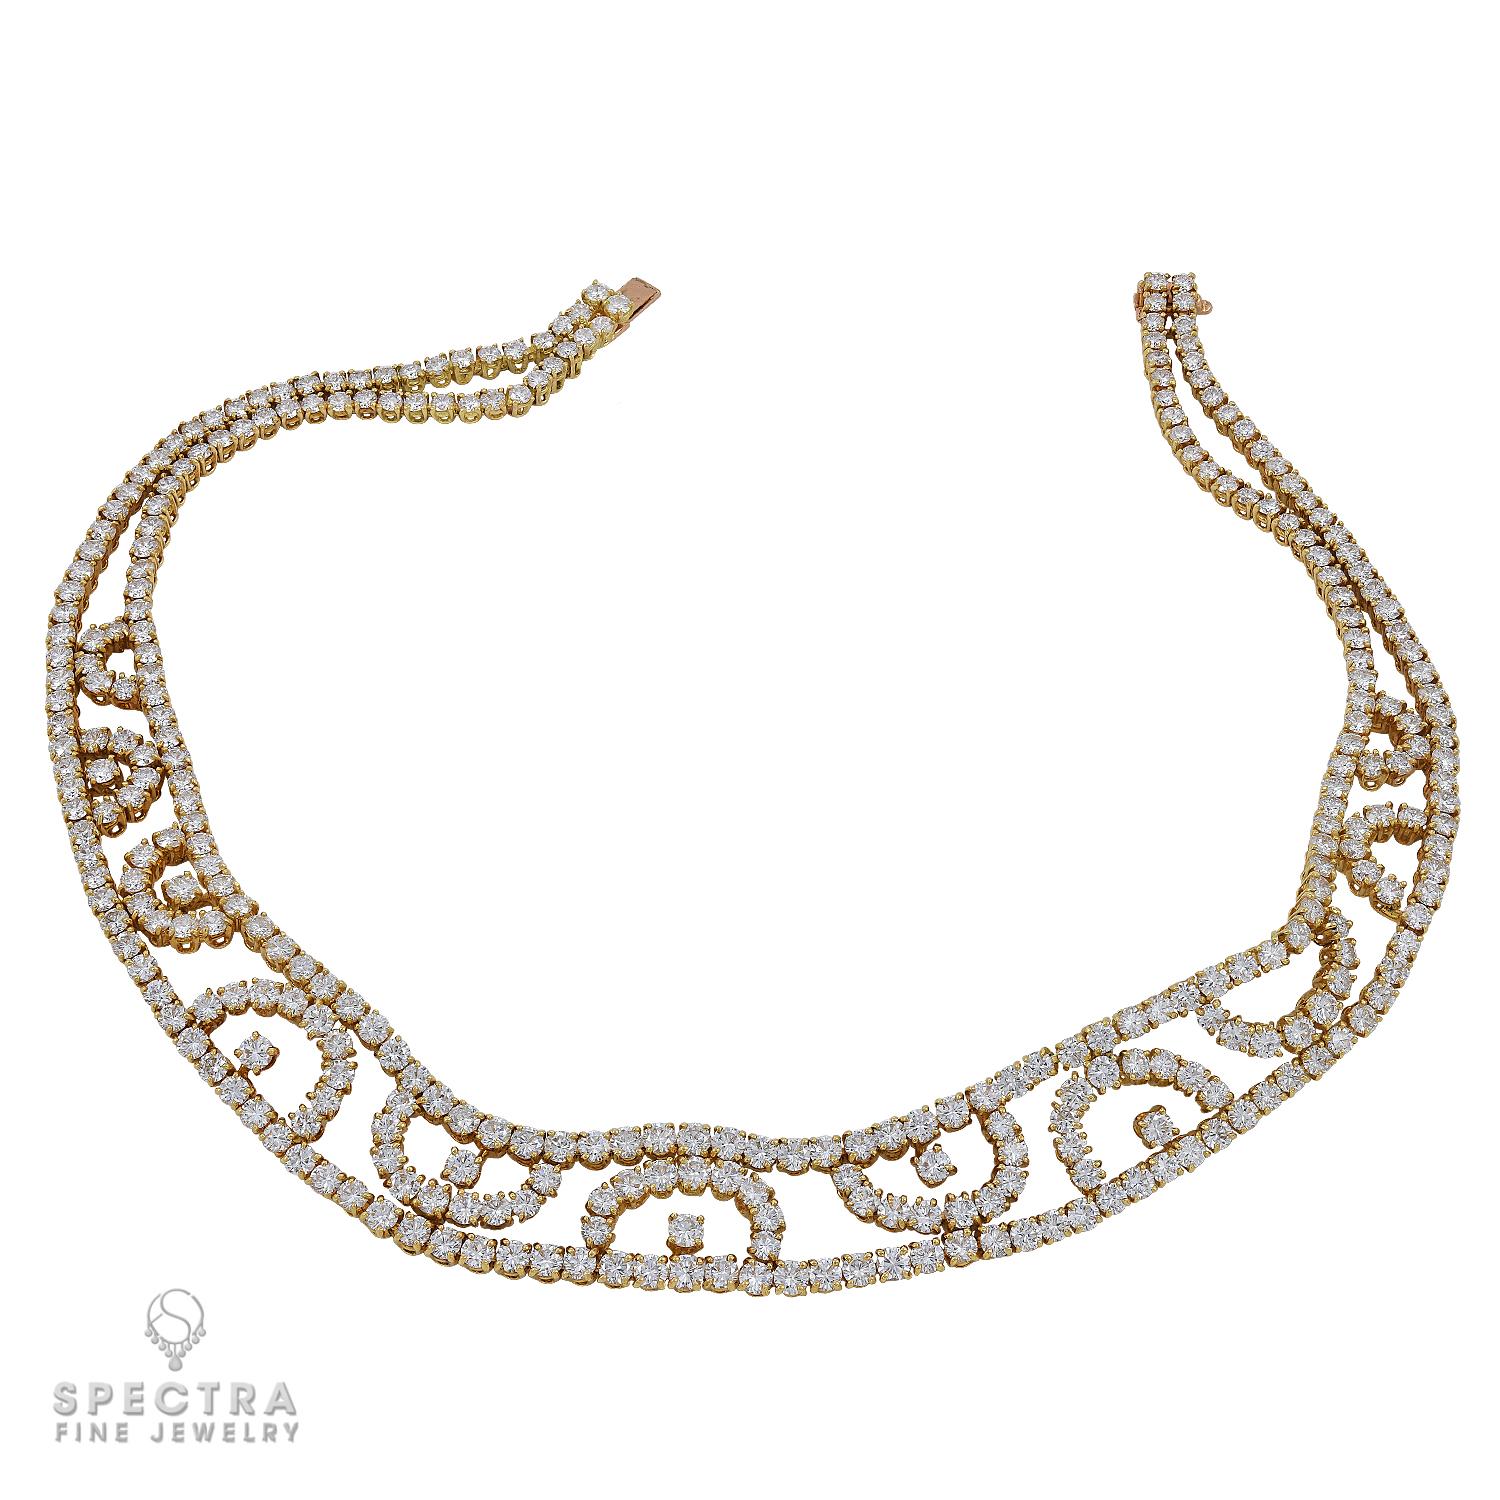 Un collier/broche à pendentifs polyvalent, créé par A&M en France dans les années 1970.
Le collier est serti de diamants taille brillant, le motif latéral peut être détaché et porté en broche, et le collier peut être porté en collier.
Le poids total